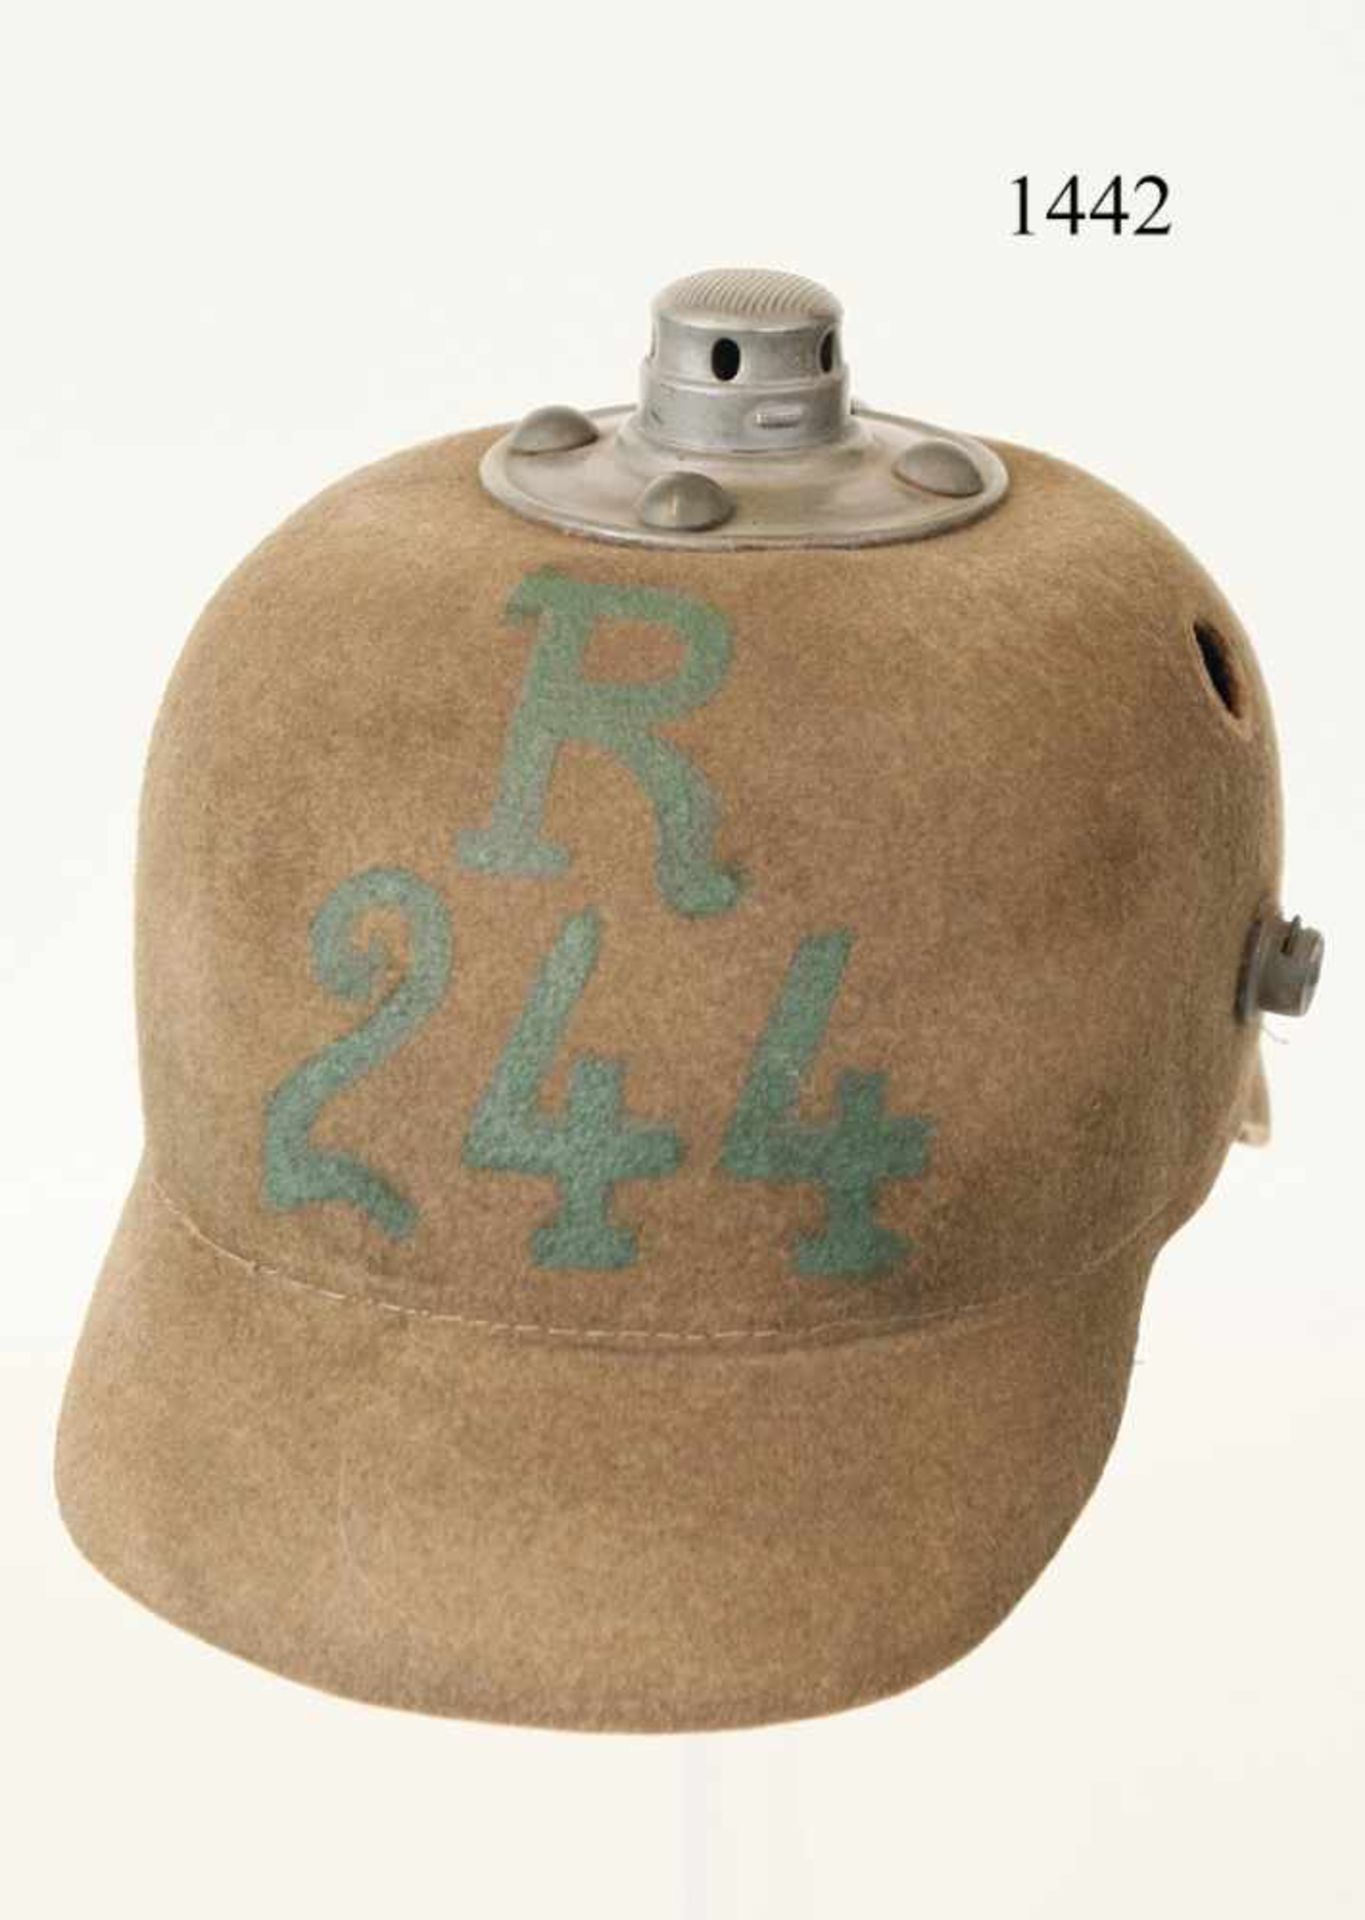 Ersatzhelm für Fußtruppen M/16Filz. Lederfutter. Truppenstempel LIR244 1916. Lüftungssiebe, Spitze